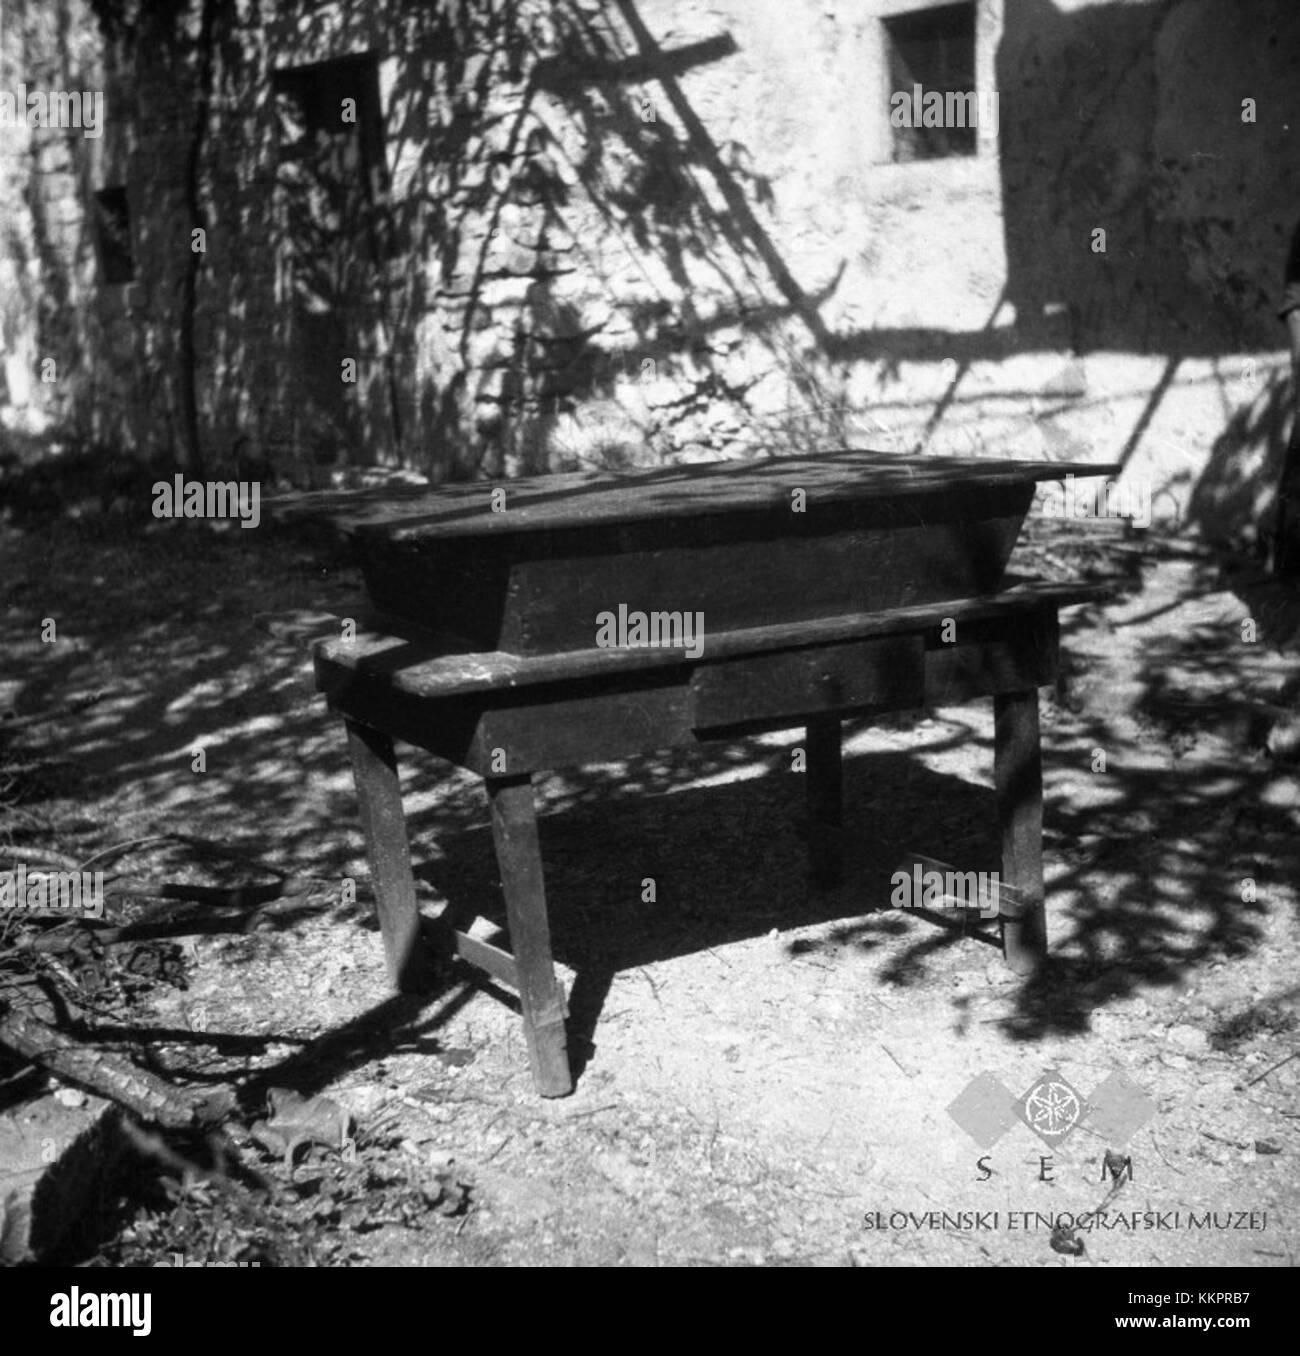 Miza, rabljena za mizo in za kadinj za kruh mesit, Osp 1949 Stock Photo -  Alamy